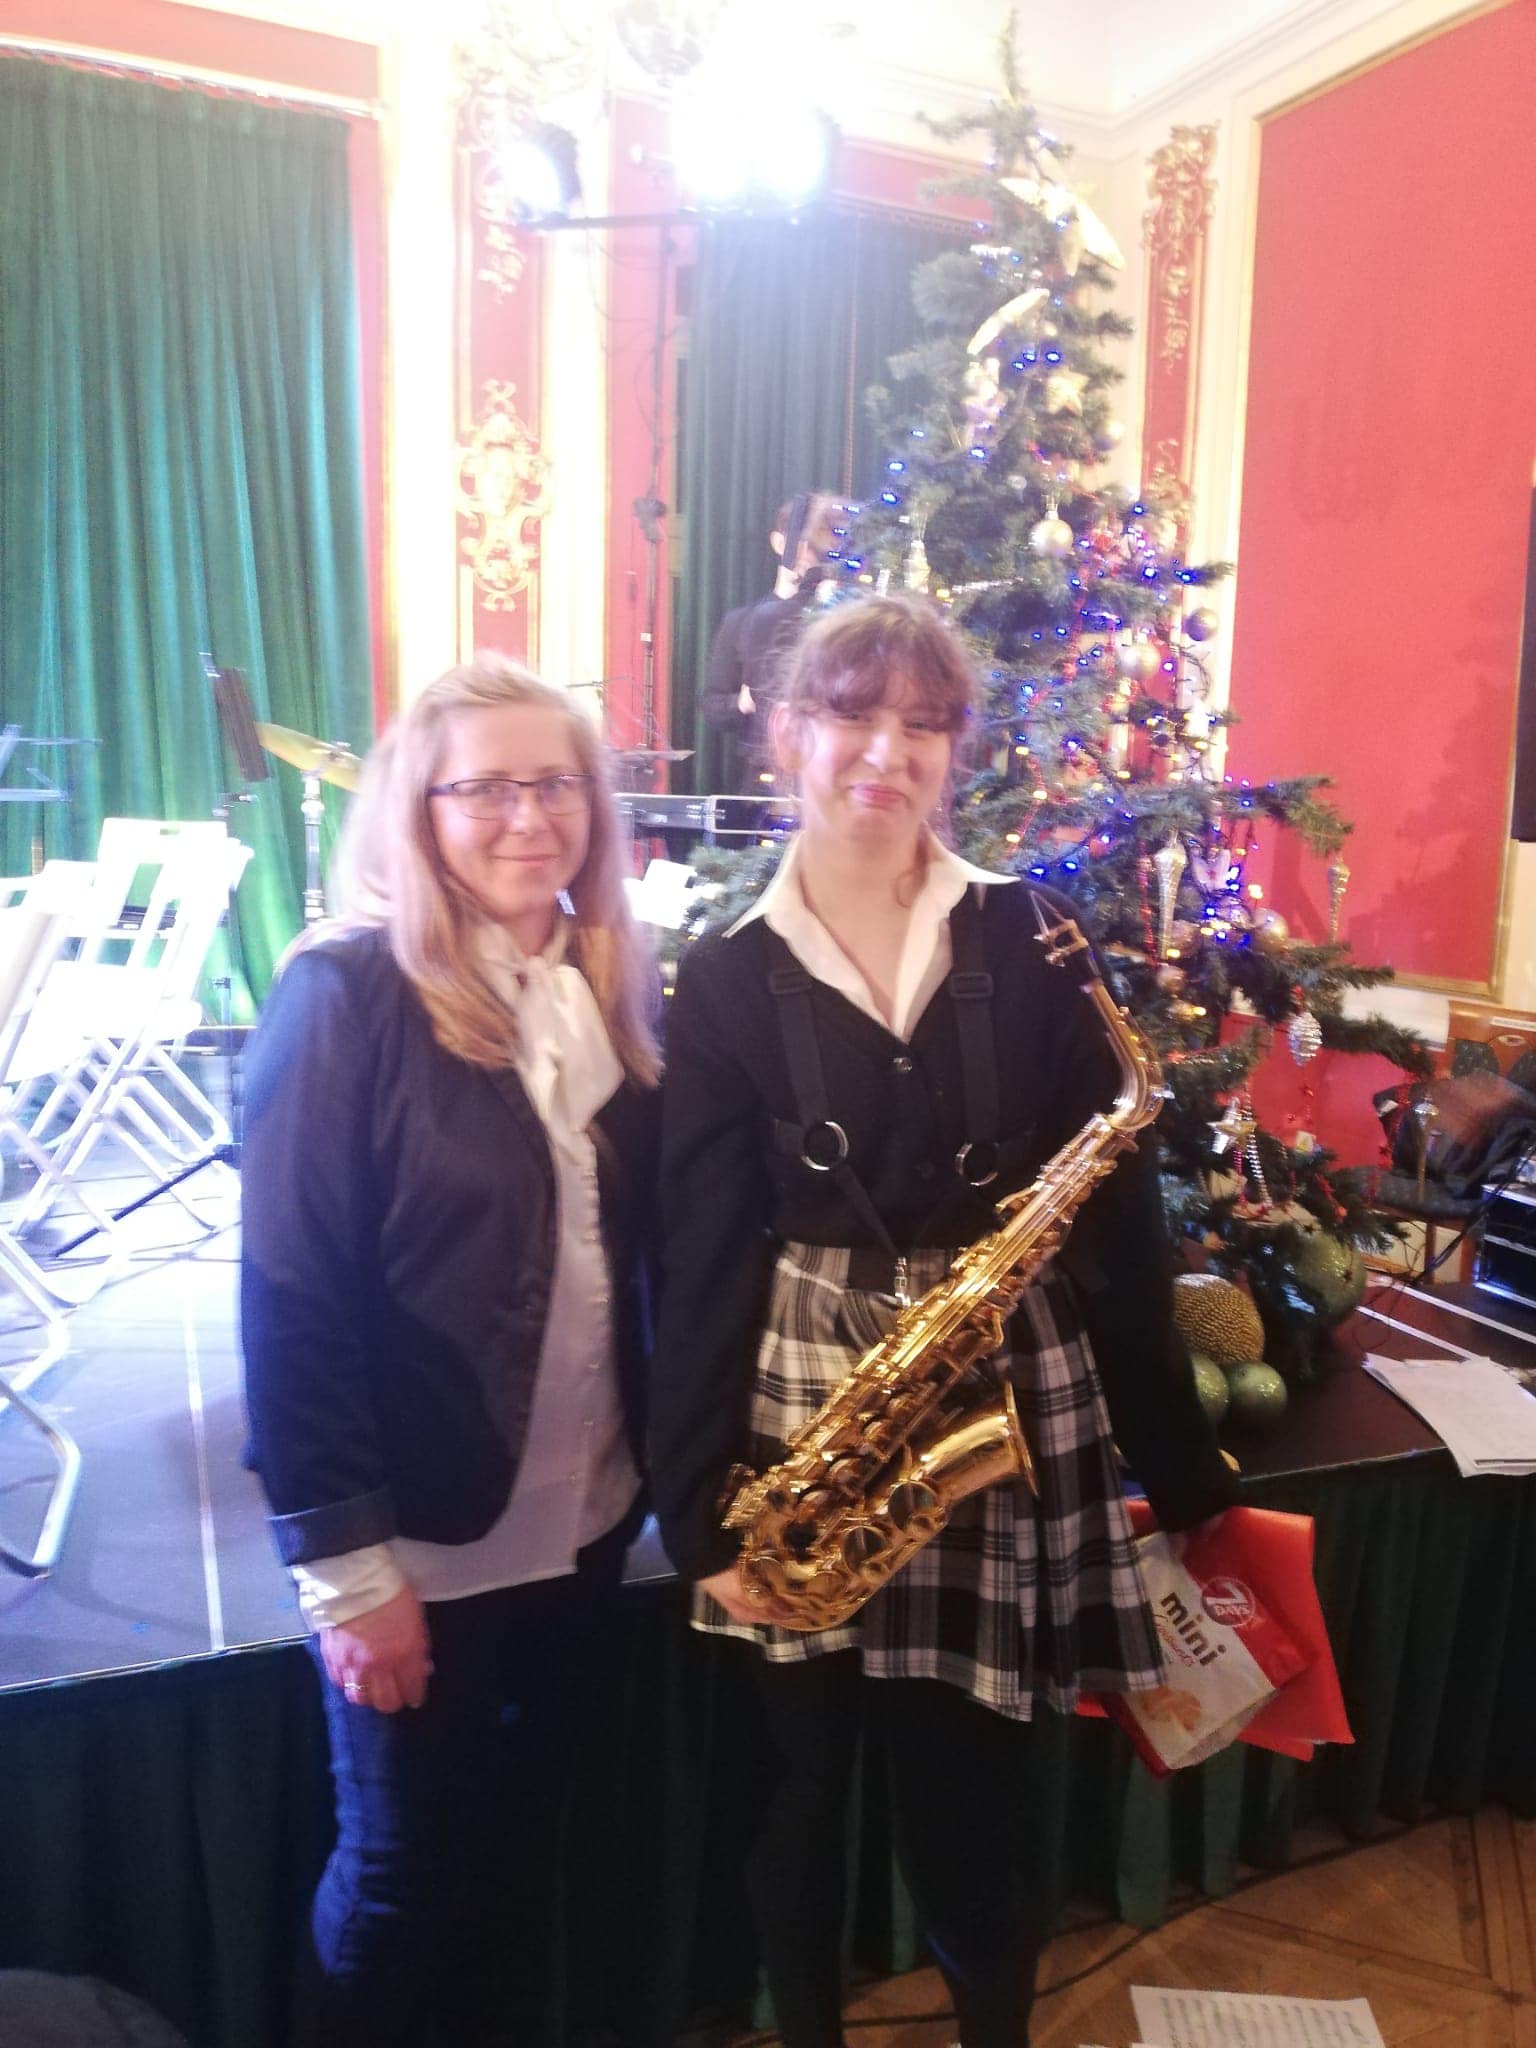 Na zdęciu widoczna Marysia Zagozdon wychowanką MOS Stargard, która wystąpiła grając na saksofonie altowym podczas koncertu pod tytułem "Trzynastka Świątecznie".